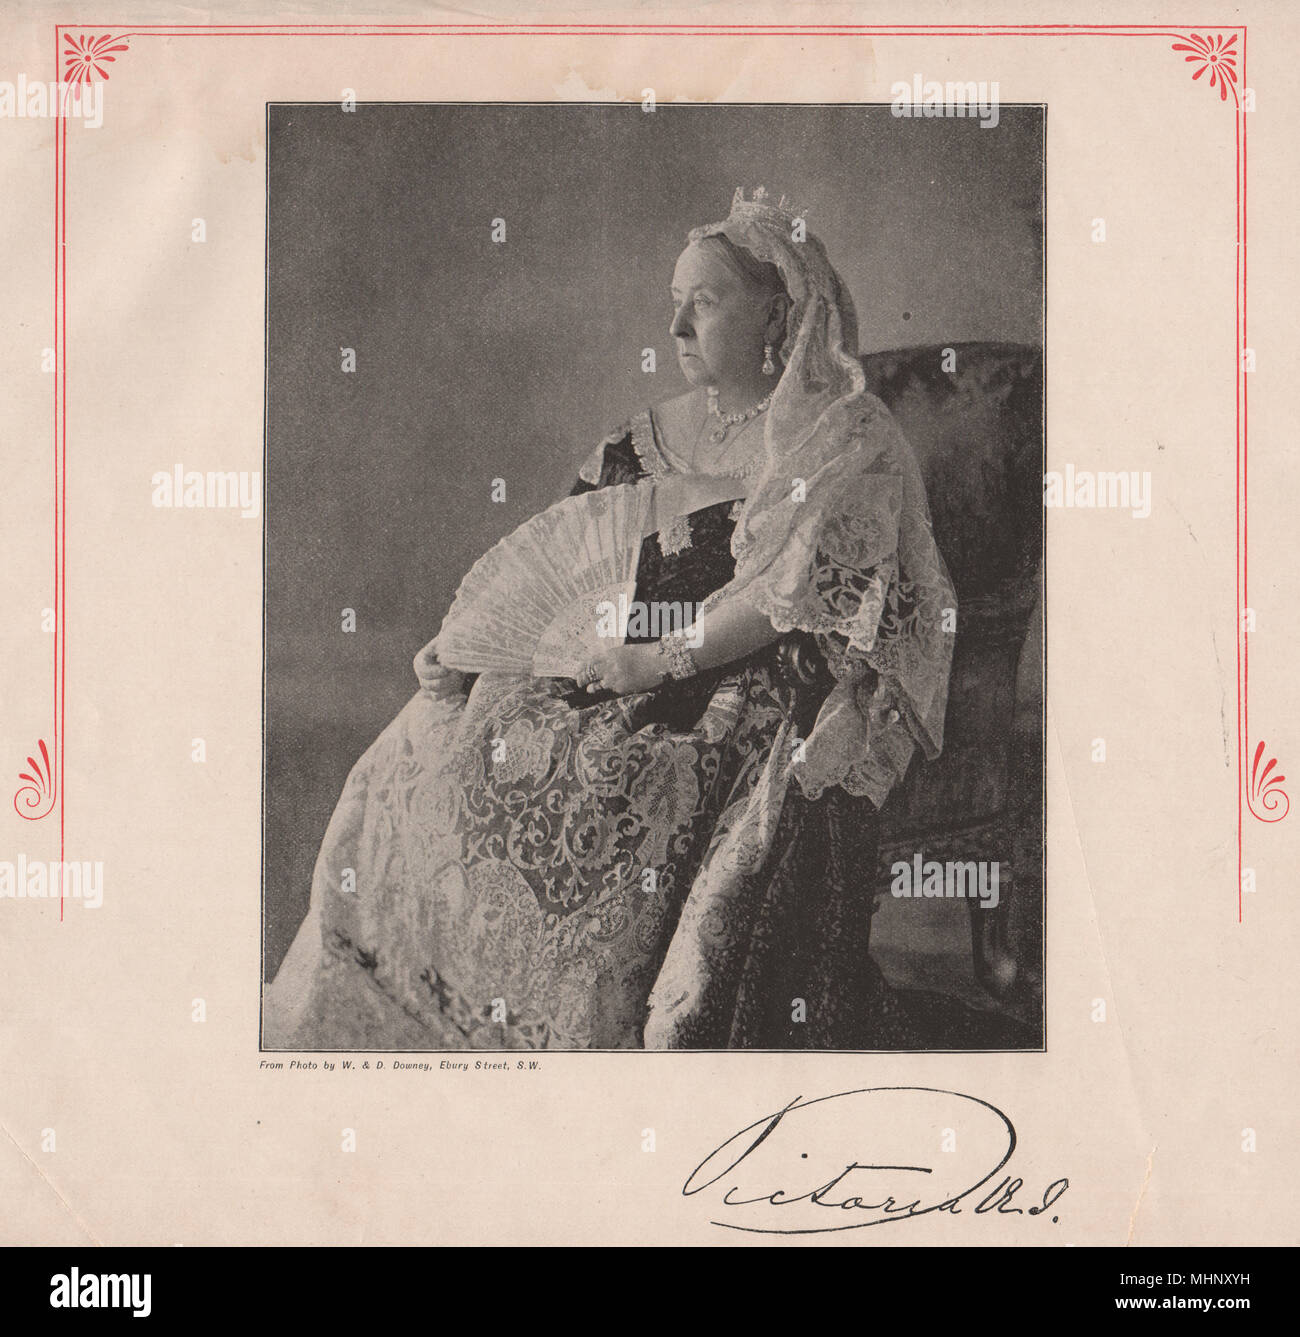 La reina Victoria. Londres. Monarcas 1896 antigüedades vintage imprimir imagen Foto de stock